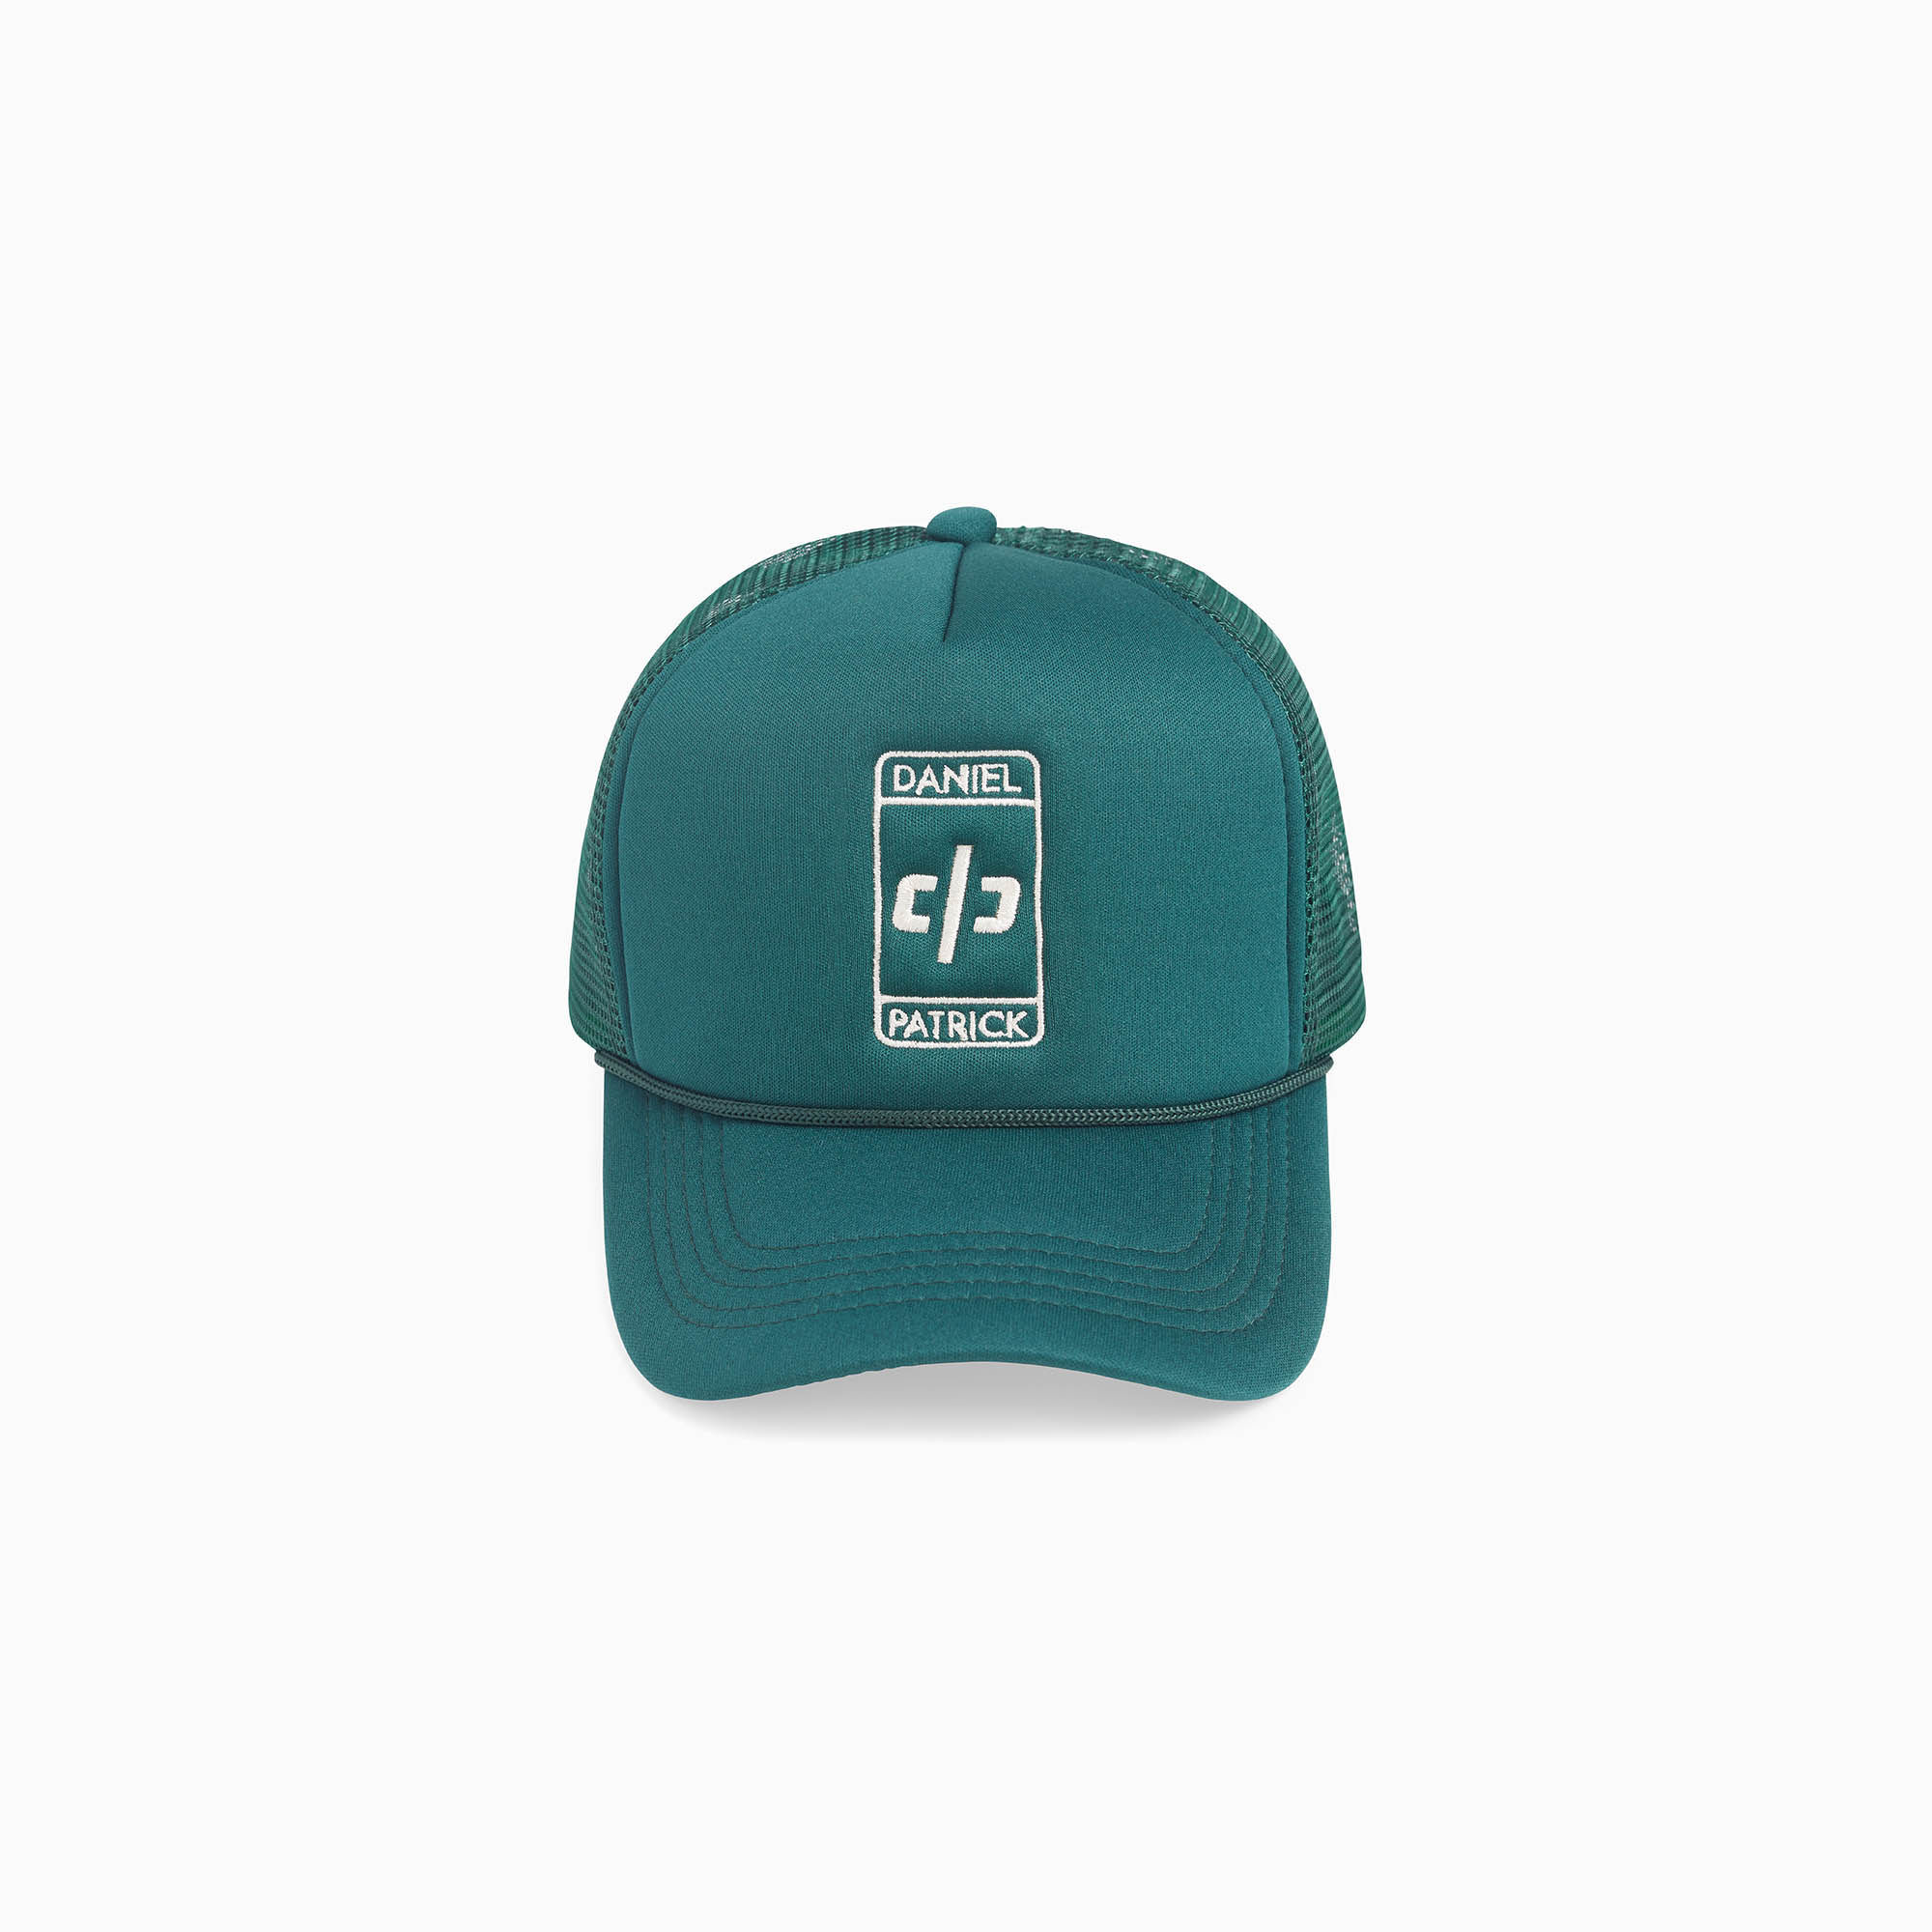 beverly hills trucker cap / hunter green